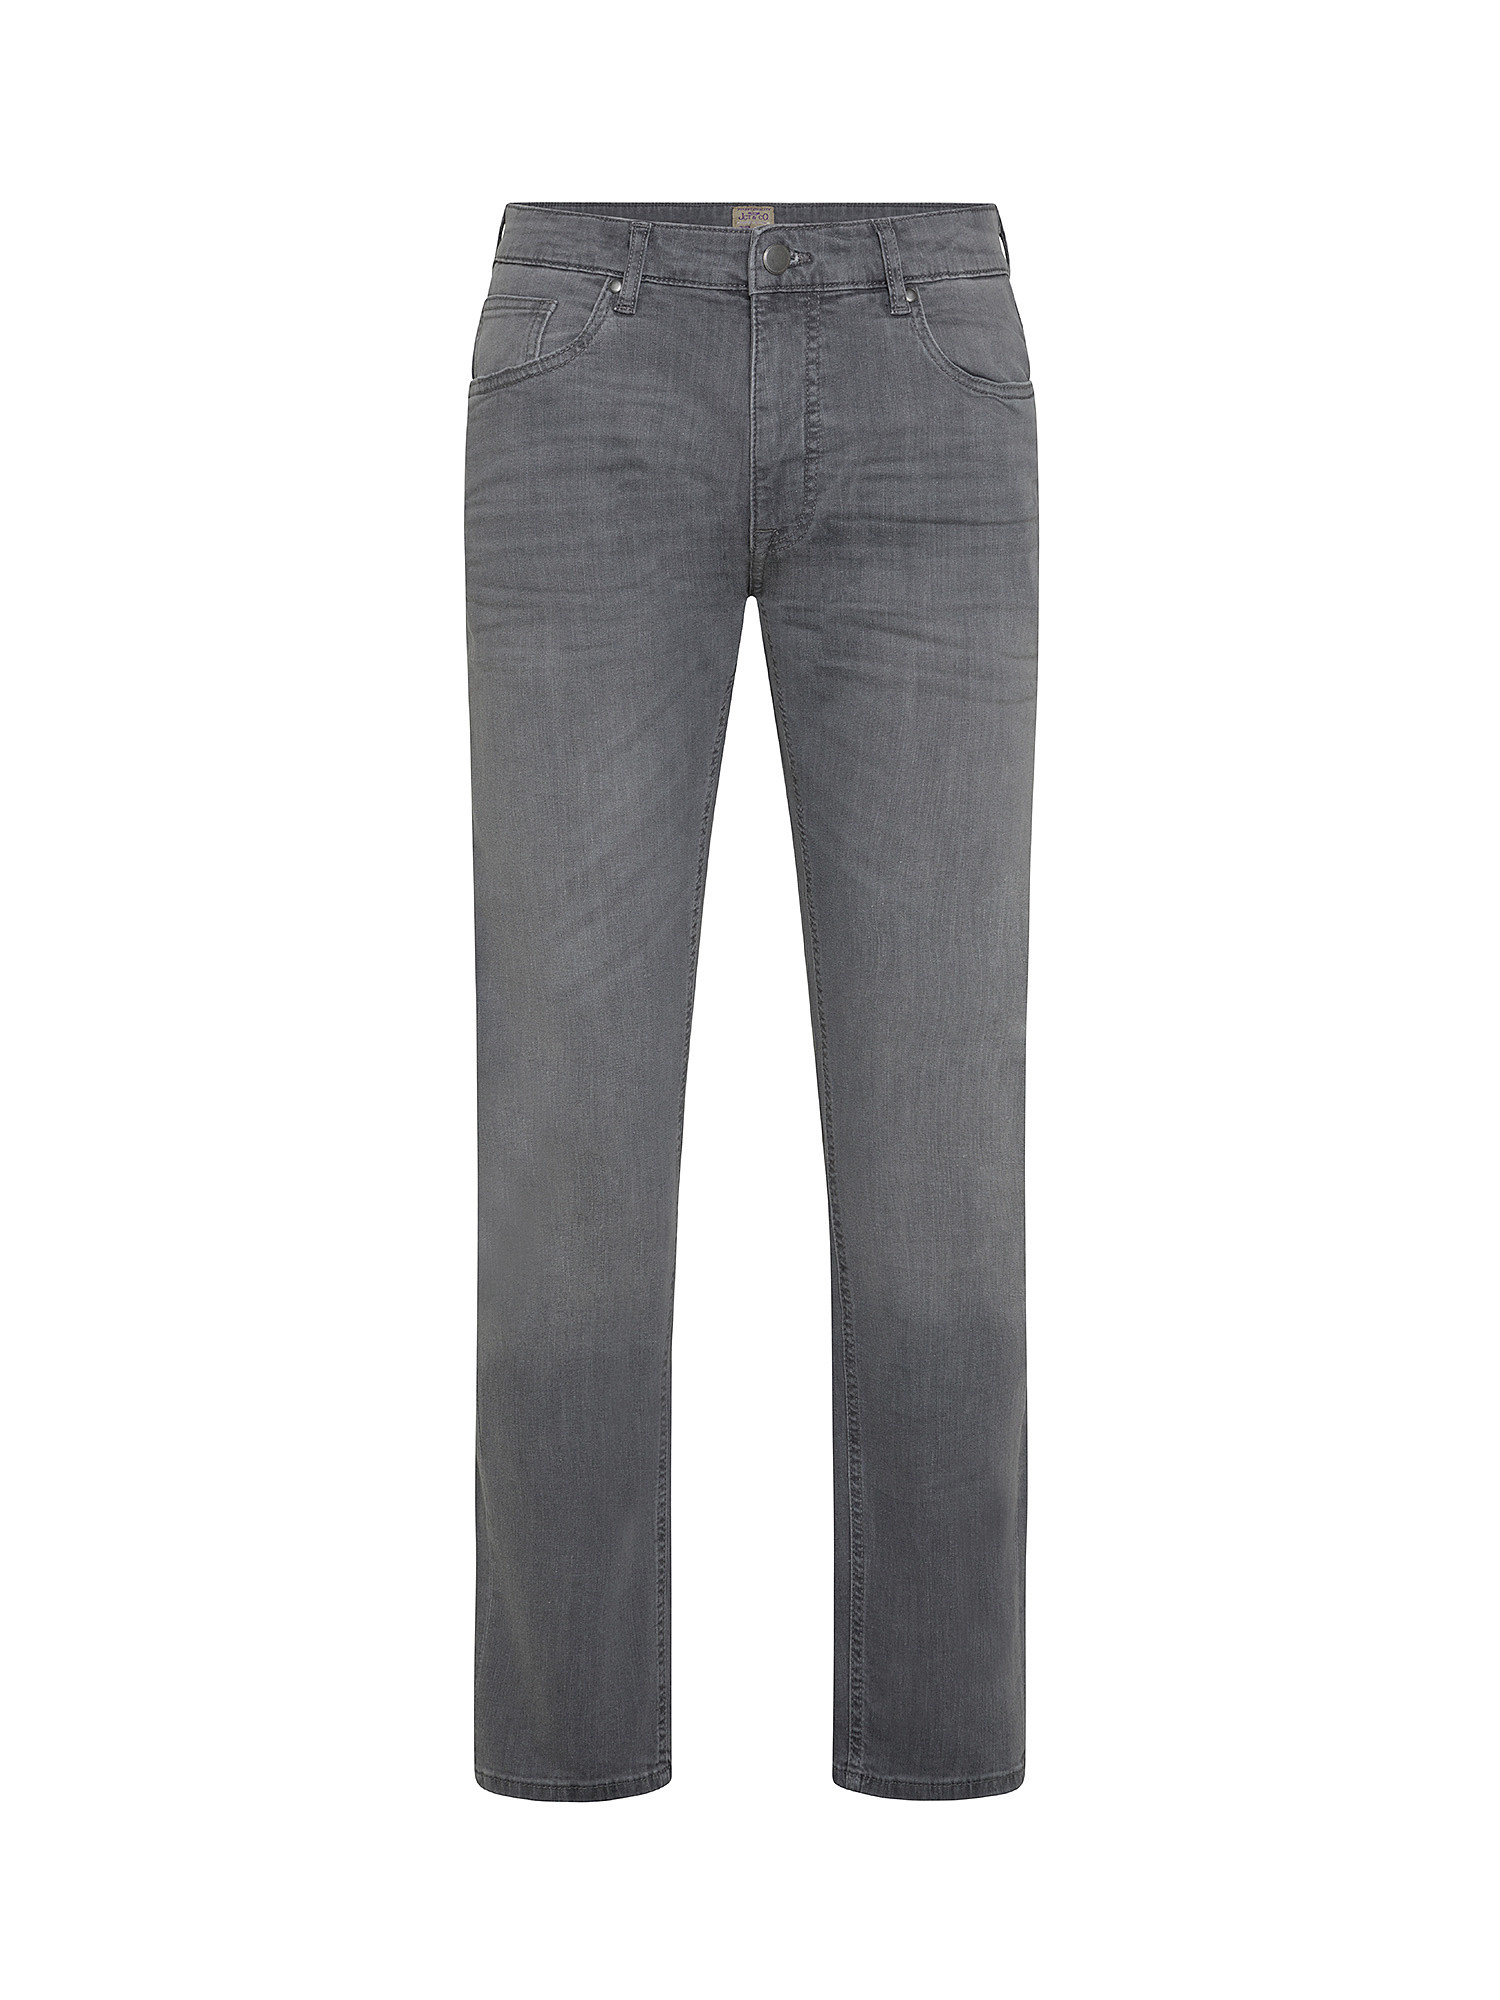 JCT - Five pocket jeans, Grey, large image number 0